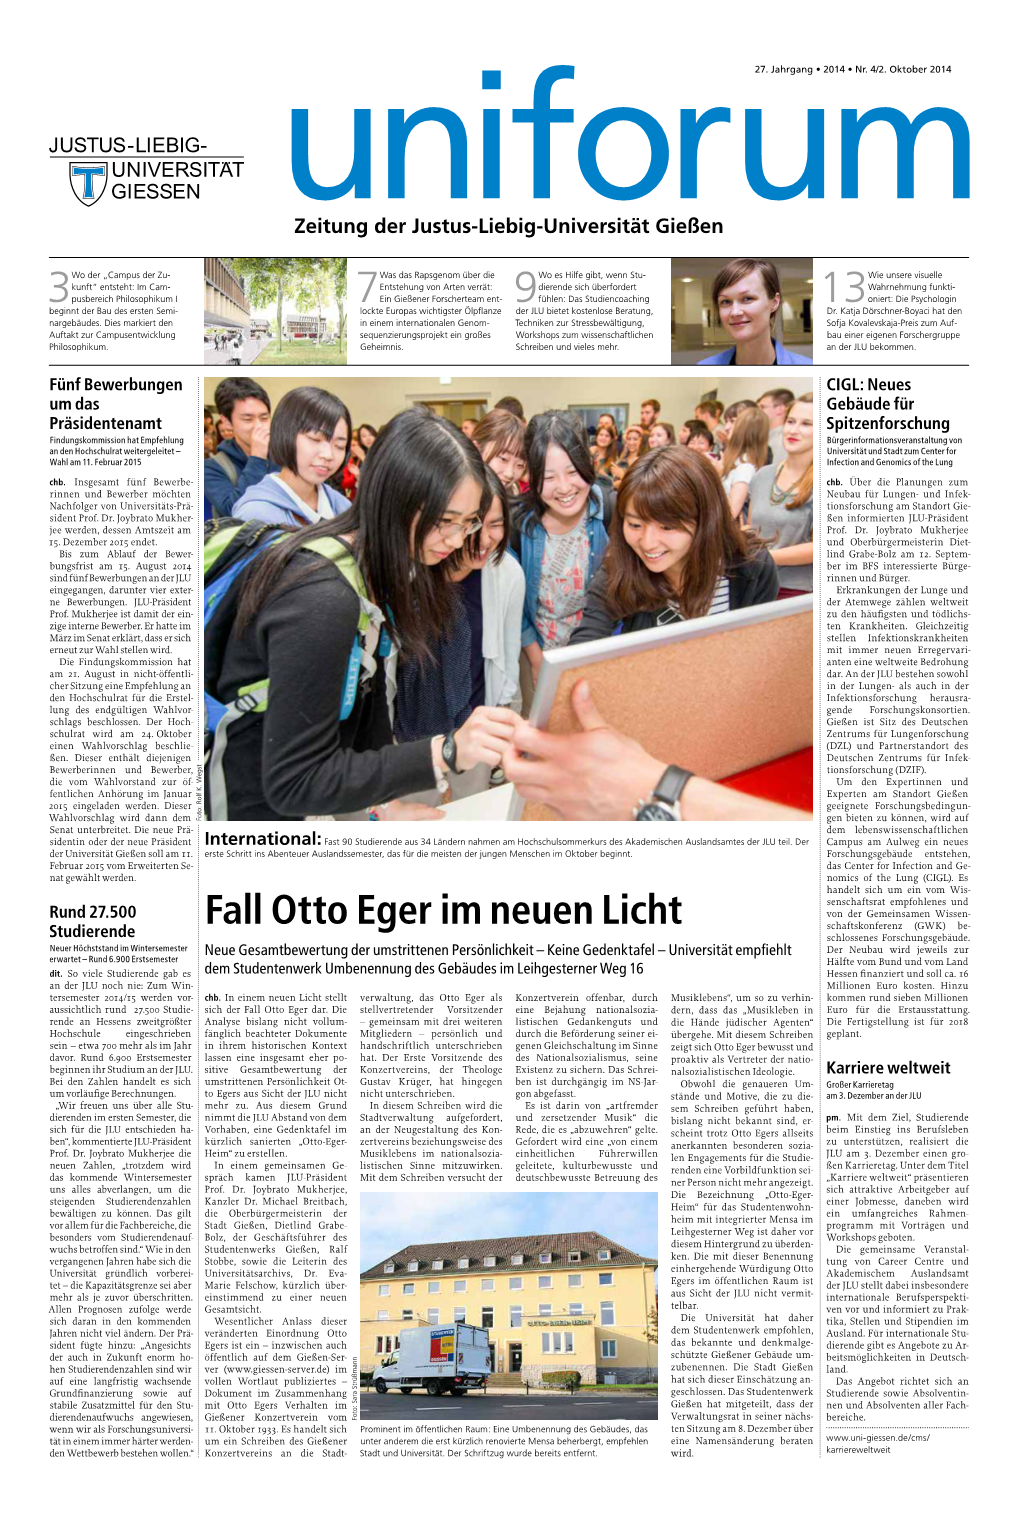 Fall Otto Eger Im Neuen Licht Schaftskonferenz (GWK) Be- Studierende Schlossenes Forschungsgebäude